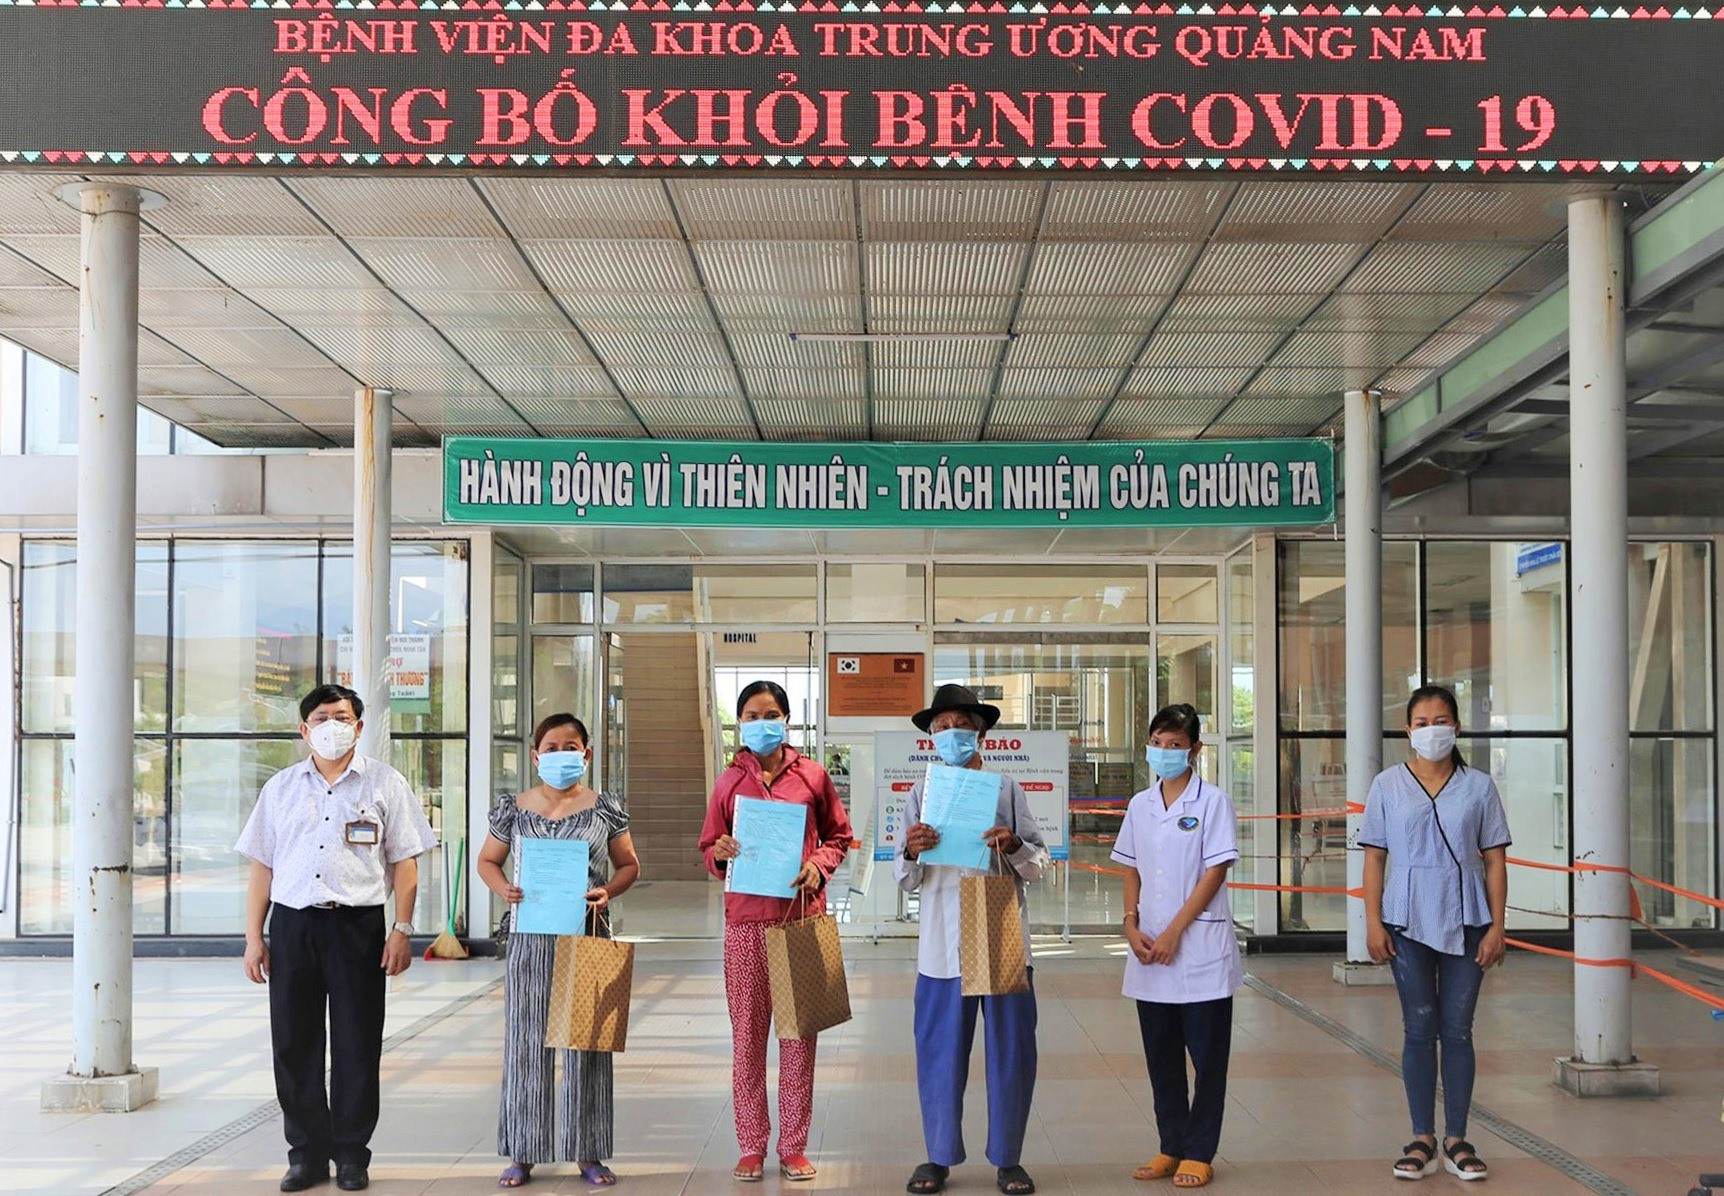 Bác sĩ Đinh Đạo - Giám đốc Bệnh viện Đa khoa Trung ương Quảng Nam trao giấy xuất viện cho 4 bệnh nhân. Ảnh: Đ. T